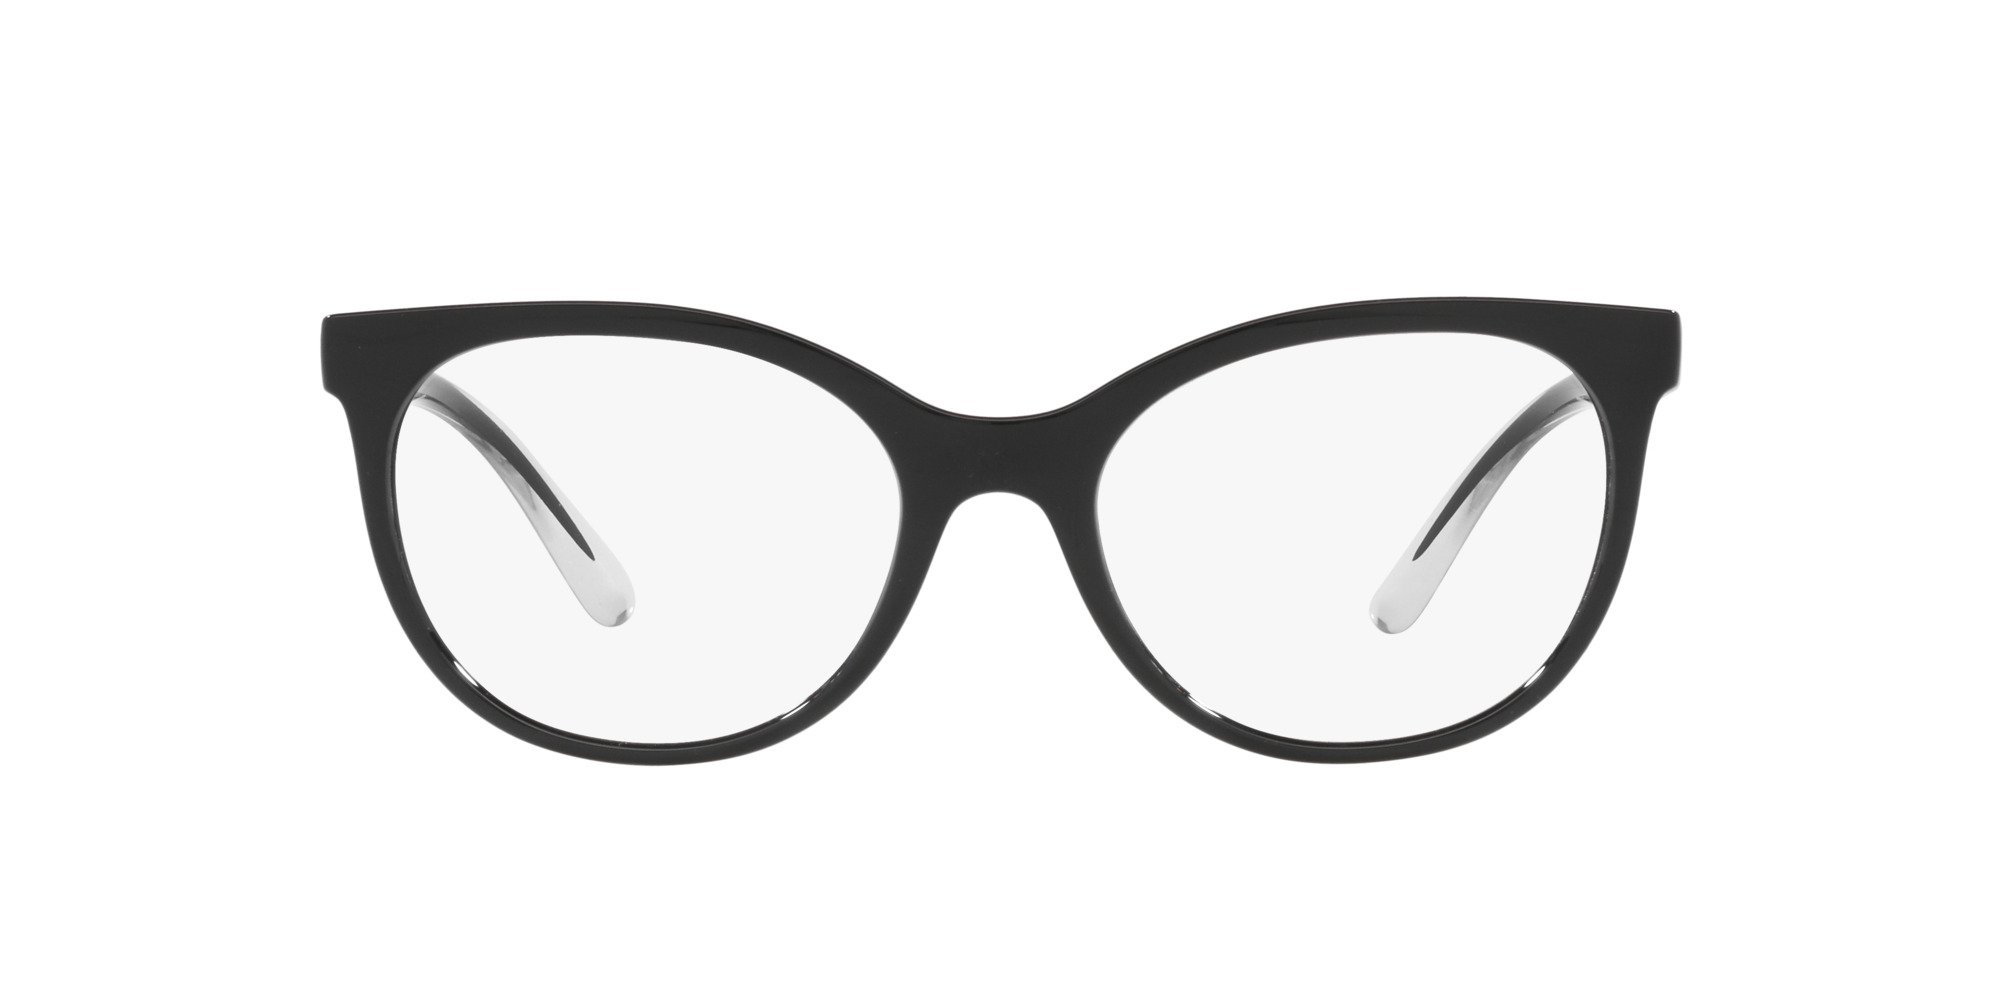 Das Bild zeigt die Korrektionsbrille DG5084 501 von der Marke D&G in schwarz.